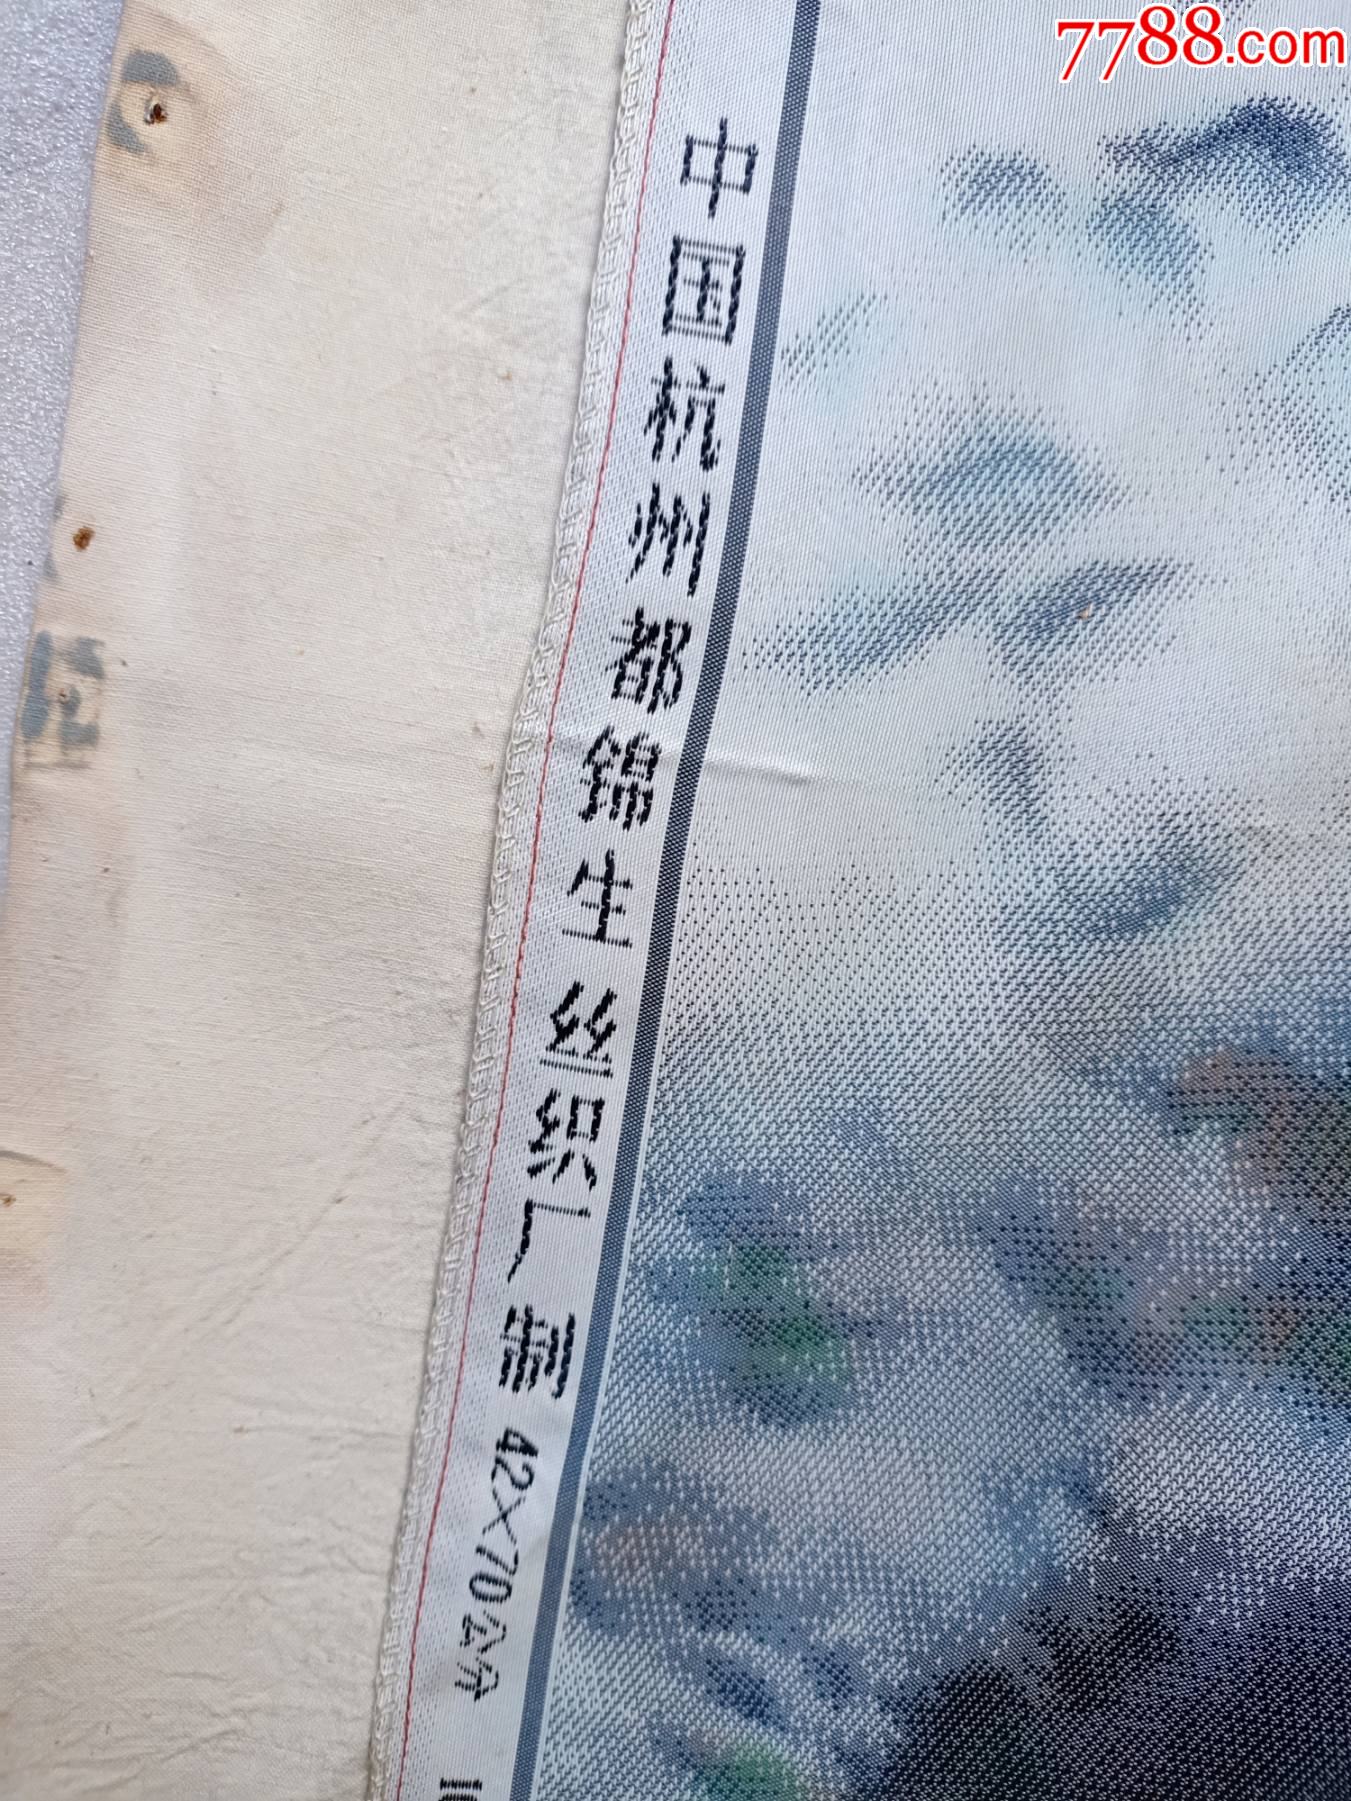 六七十年代左右杭州都锦生丝织厂出品的织锦画b676,42*70厘米,四周缝